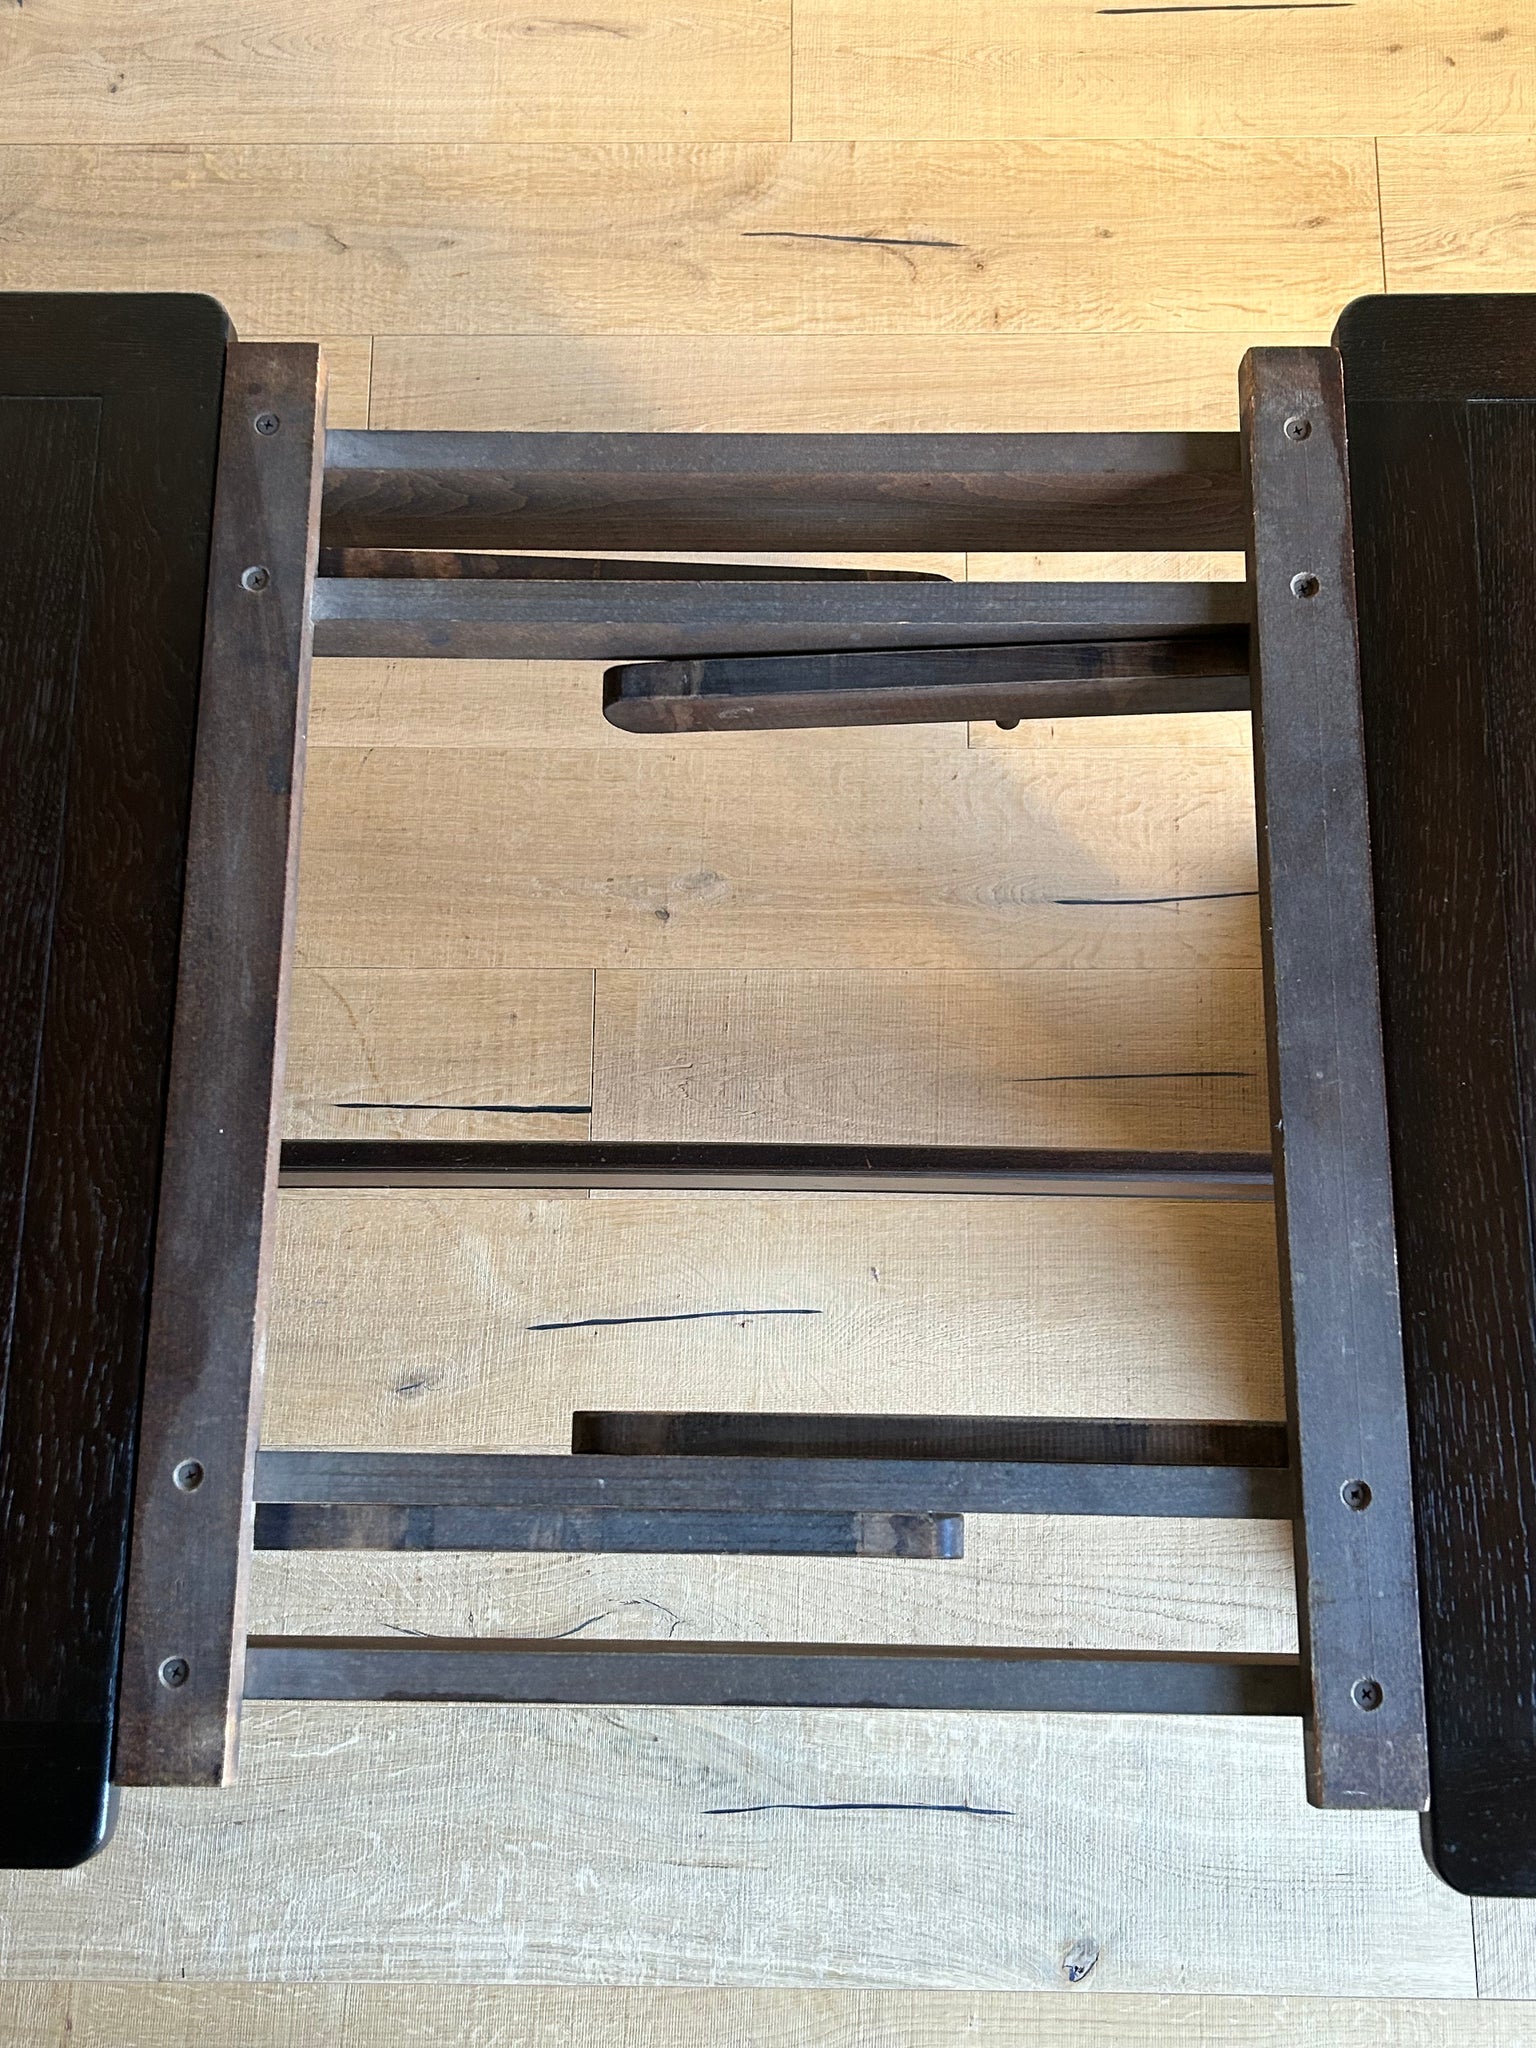 アーコール ドローリーフ リフェクトリー テーブル / ercol old colonial draw leaf refectory table '434' #0261